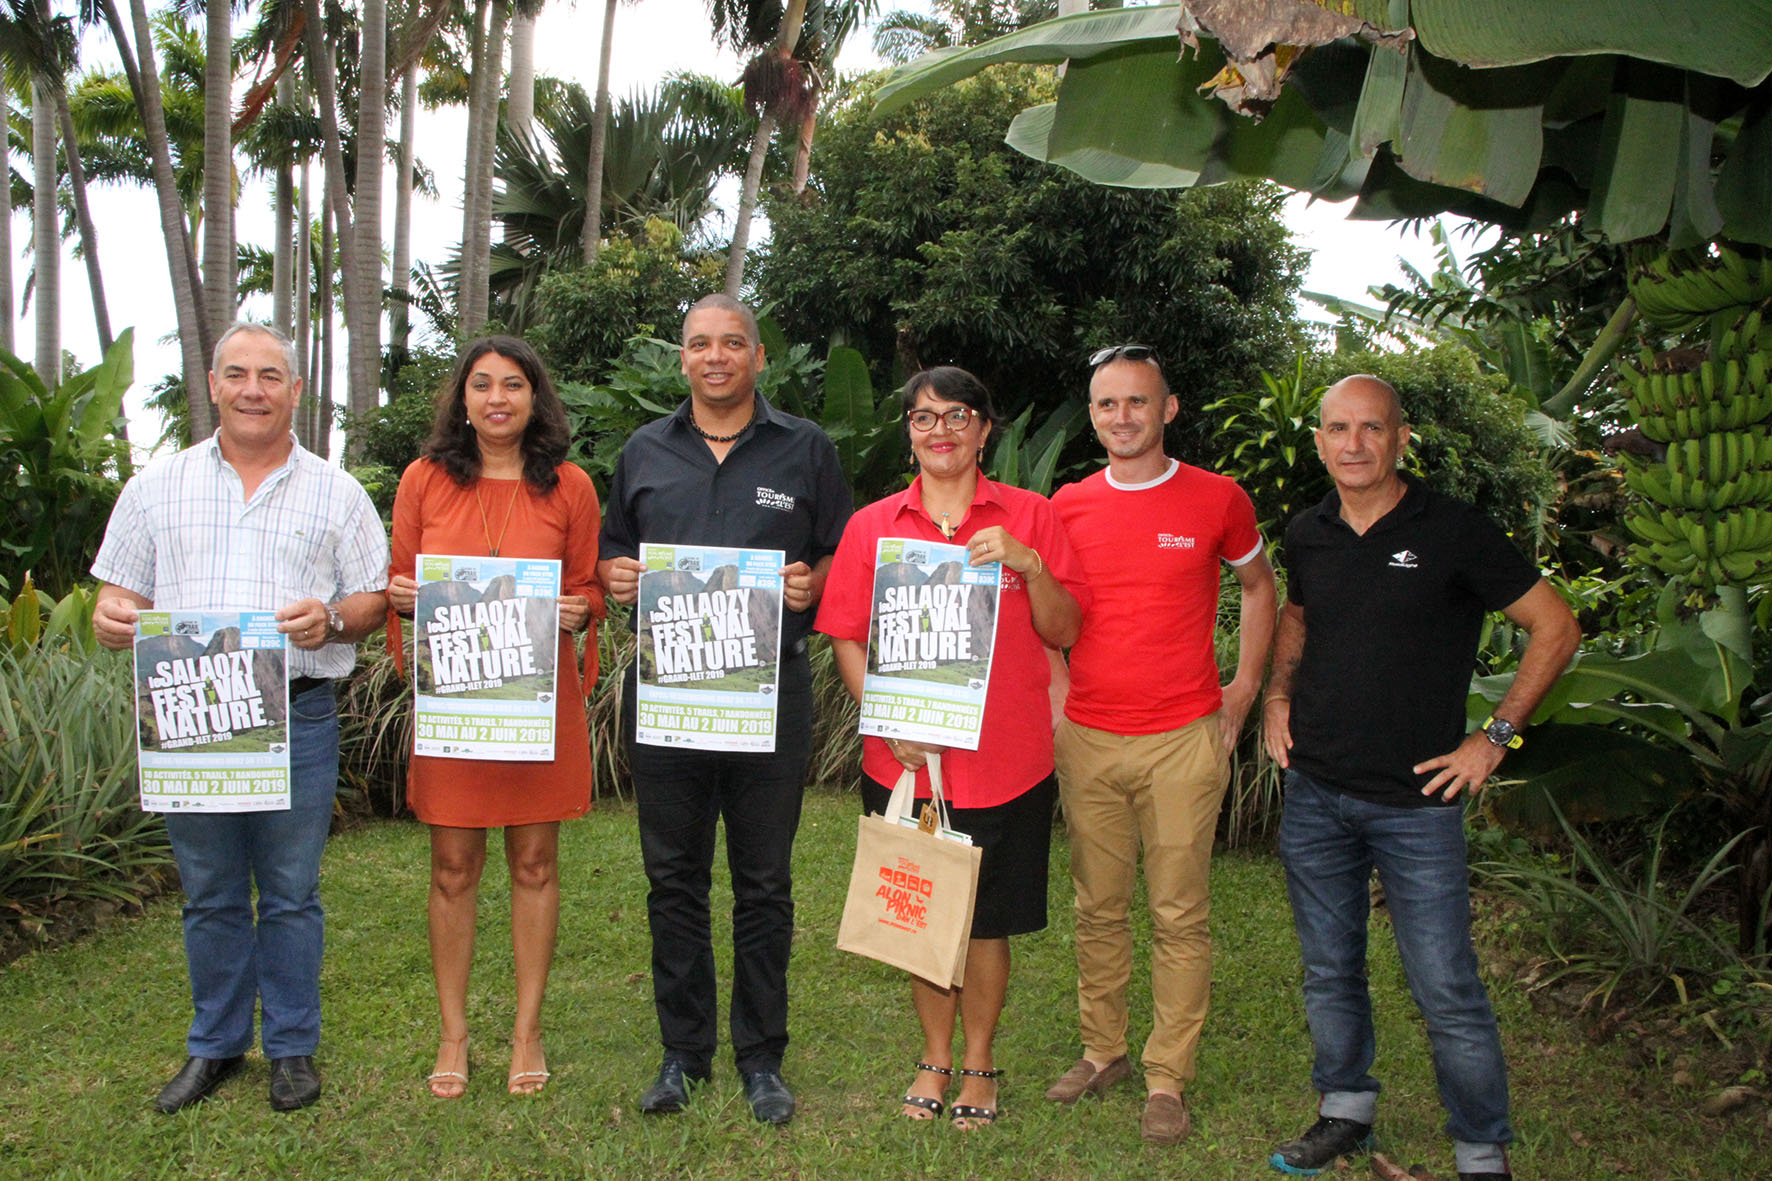 Les organisateurs présentent l’affiche du premier Salaozy Festival Nature